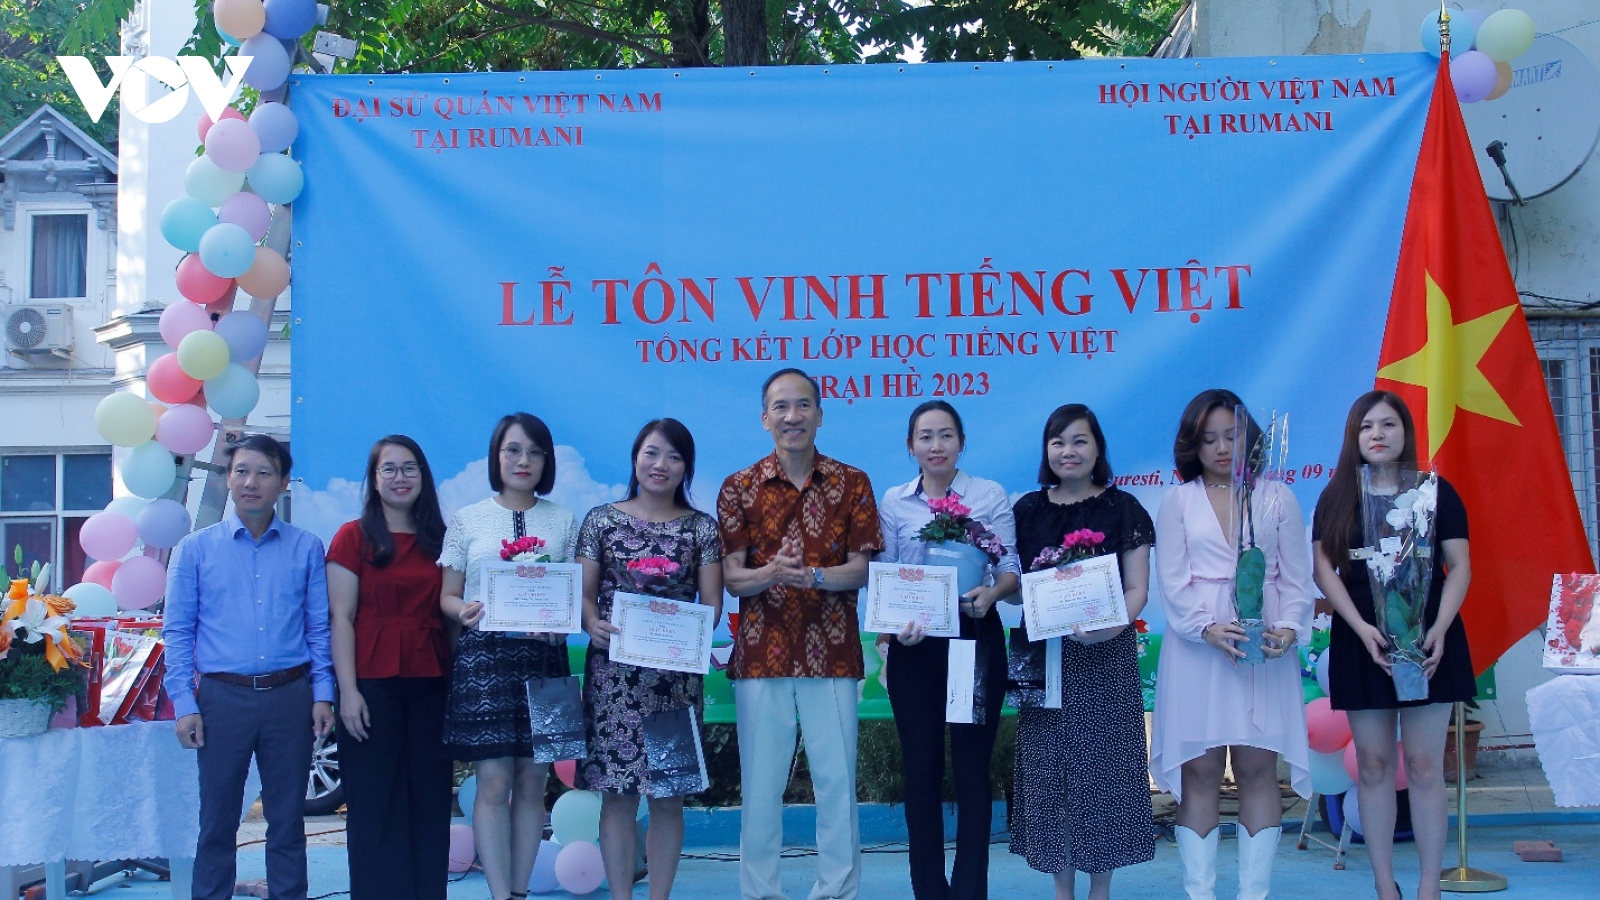 Gìn giữ Tiếng Việt trong cộng đồng người Việt tại Romania